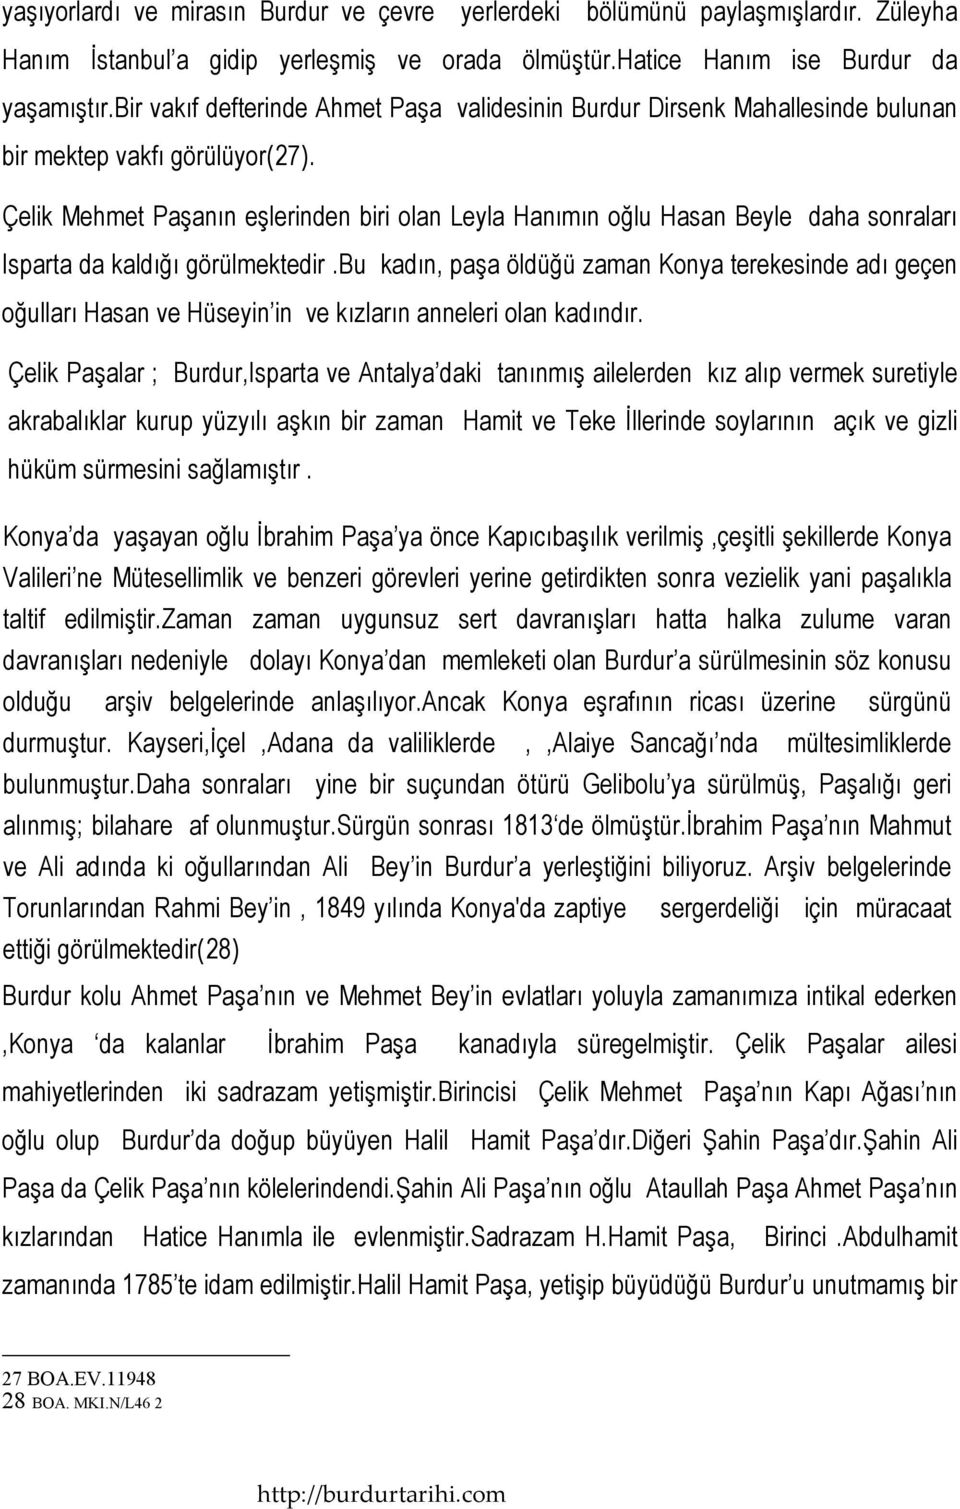 Çelik Mehmet Paşanın eşlerinden biri olan Leyla Hanımın oğlu Hasan Beyle daha sonraları Isparta da kaldığı görülmektedir.